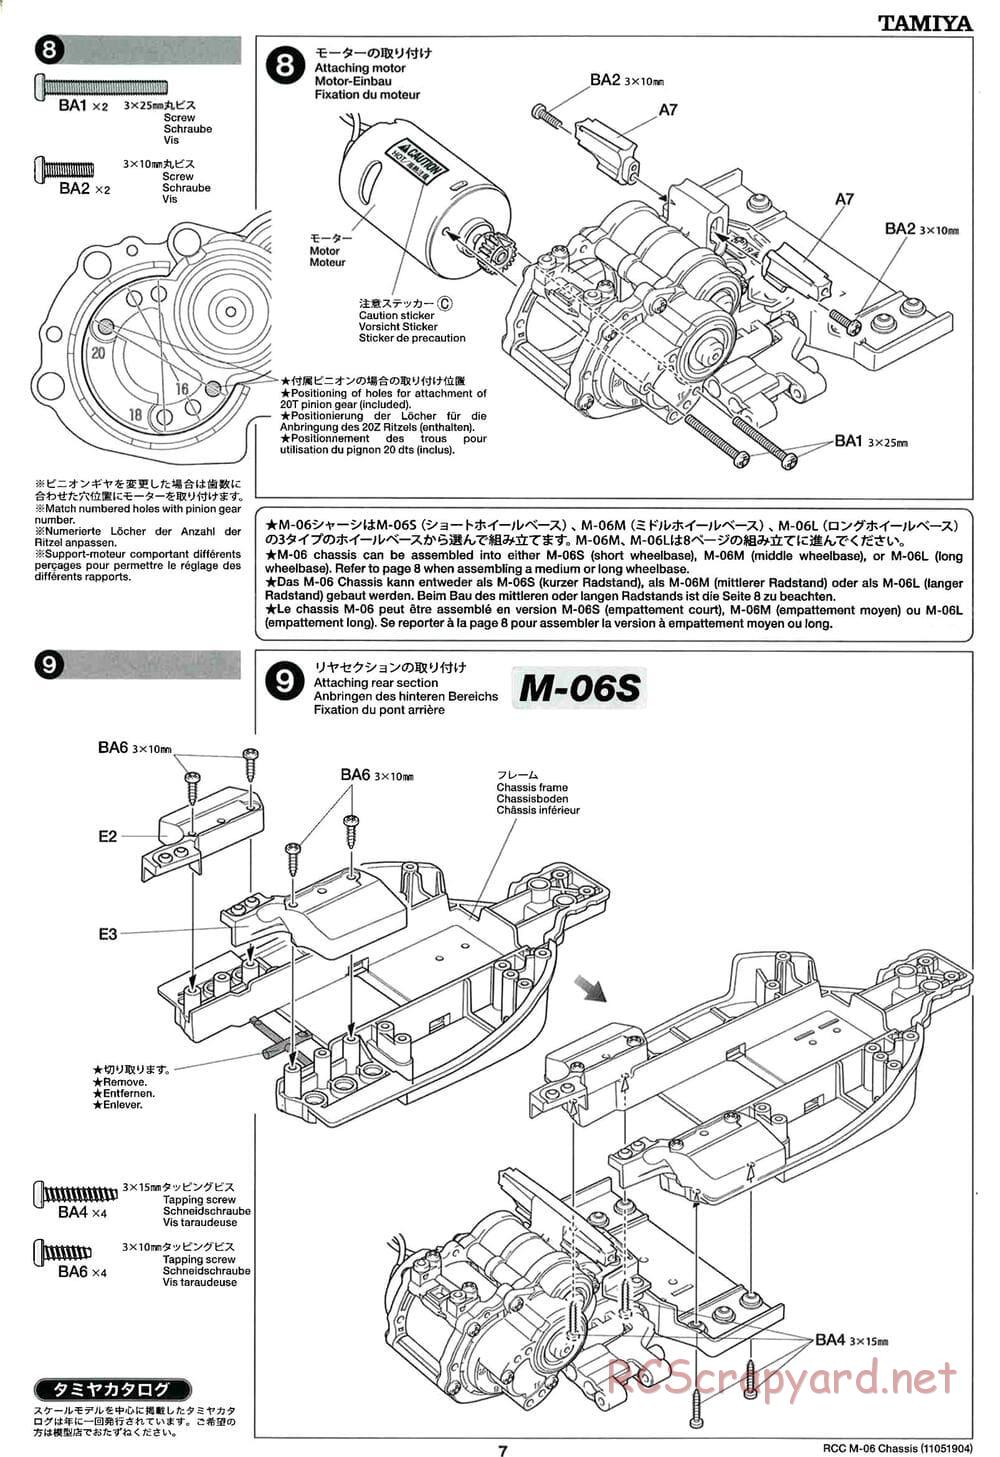 Tamiya - M-06 Chassis - Manual - Page 7